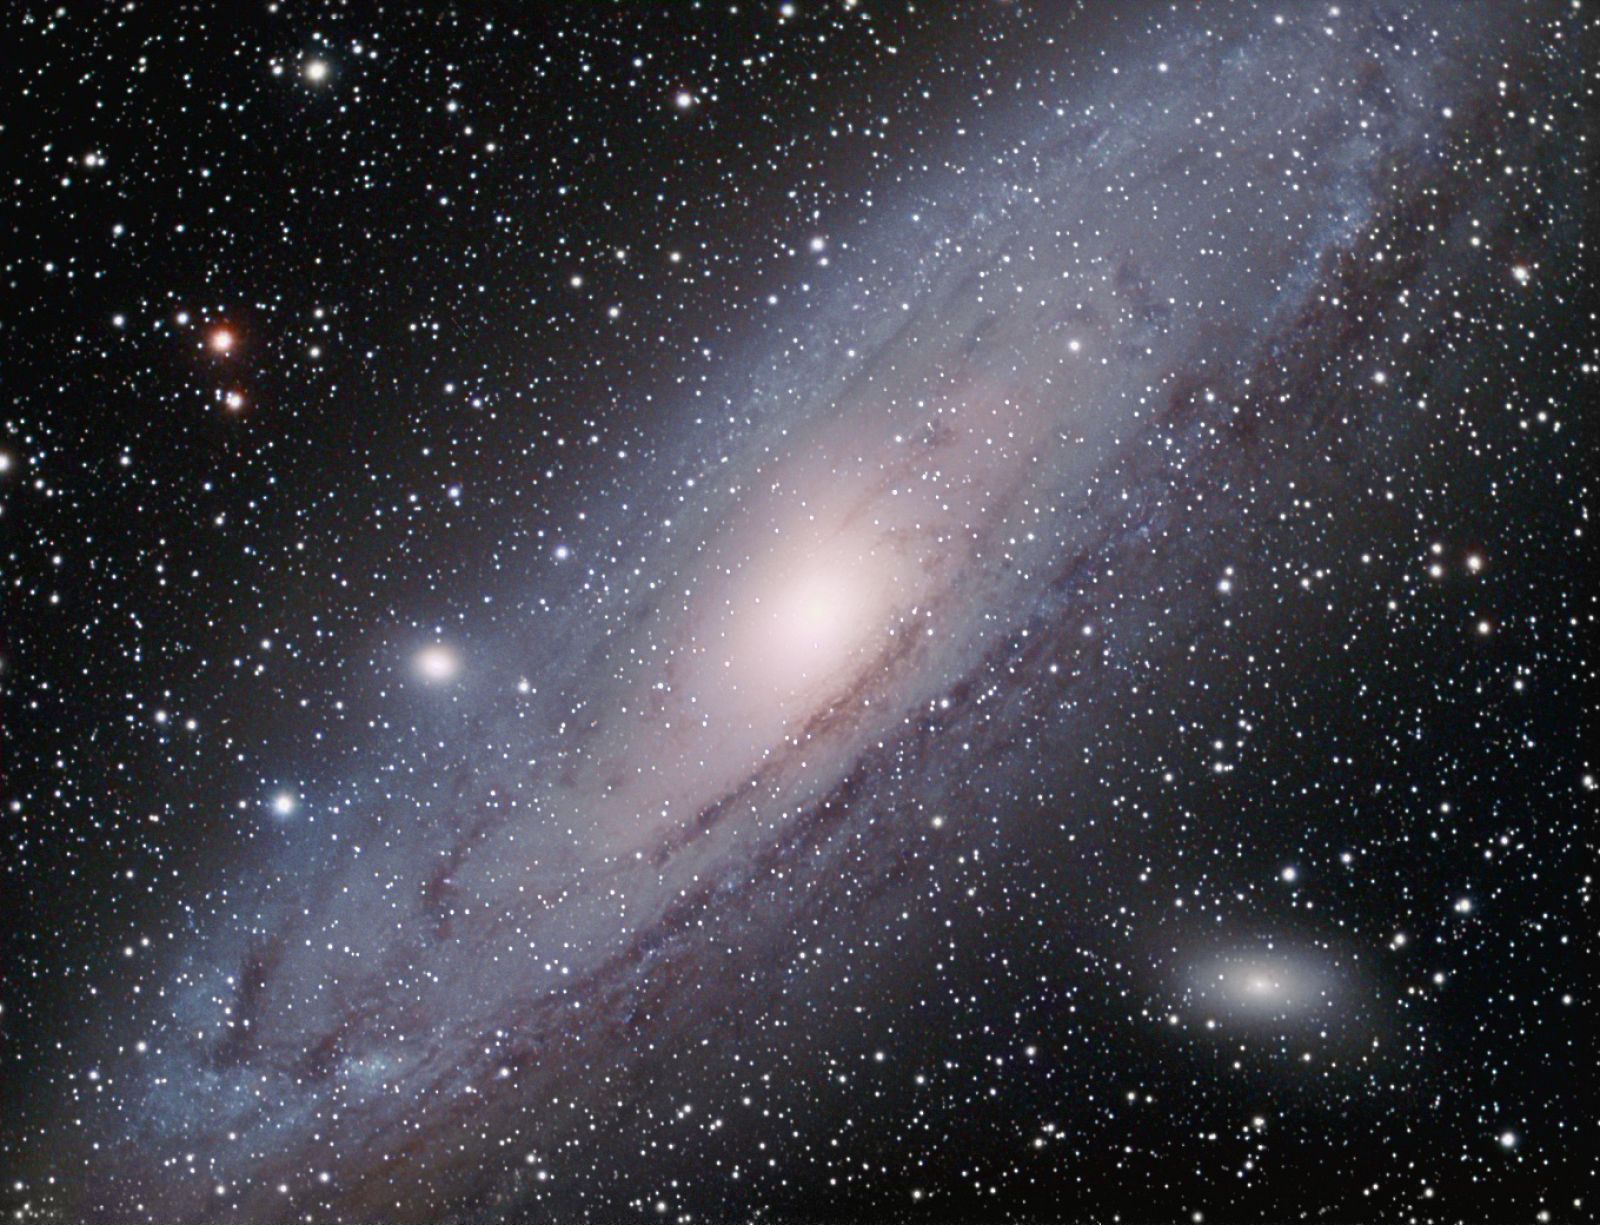 La galaxia de Andrómeda (M31) está situada a tan sólo 2.3 millones de años luz de la Tierra, lo que la convierte en la galaxia gigante más cercana a la Vía Láctea